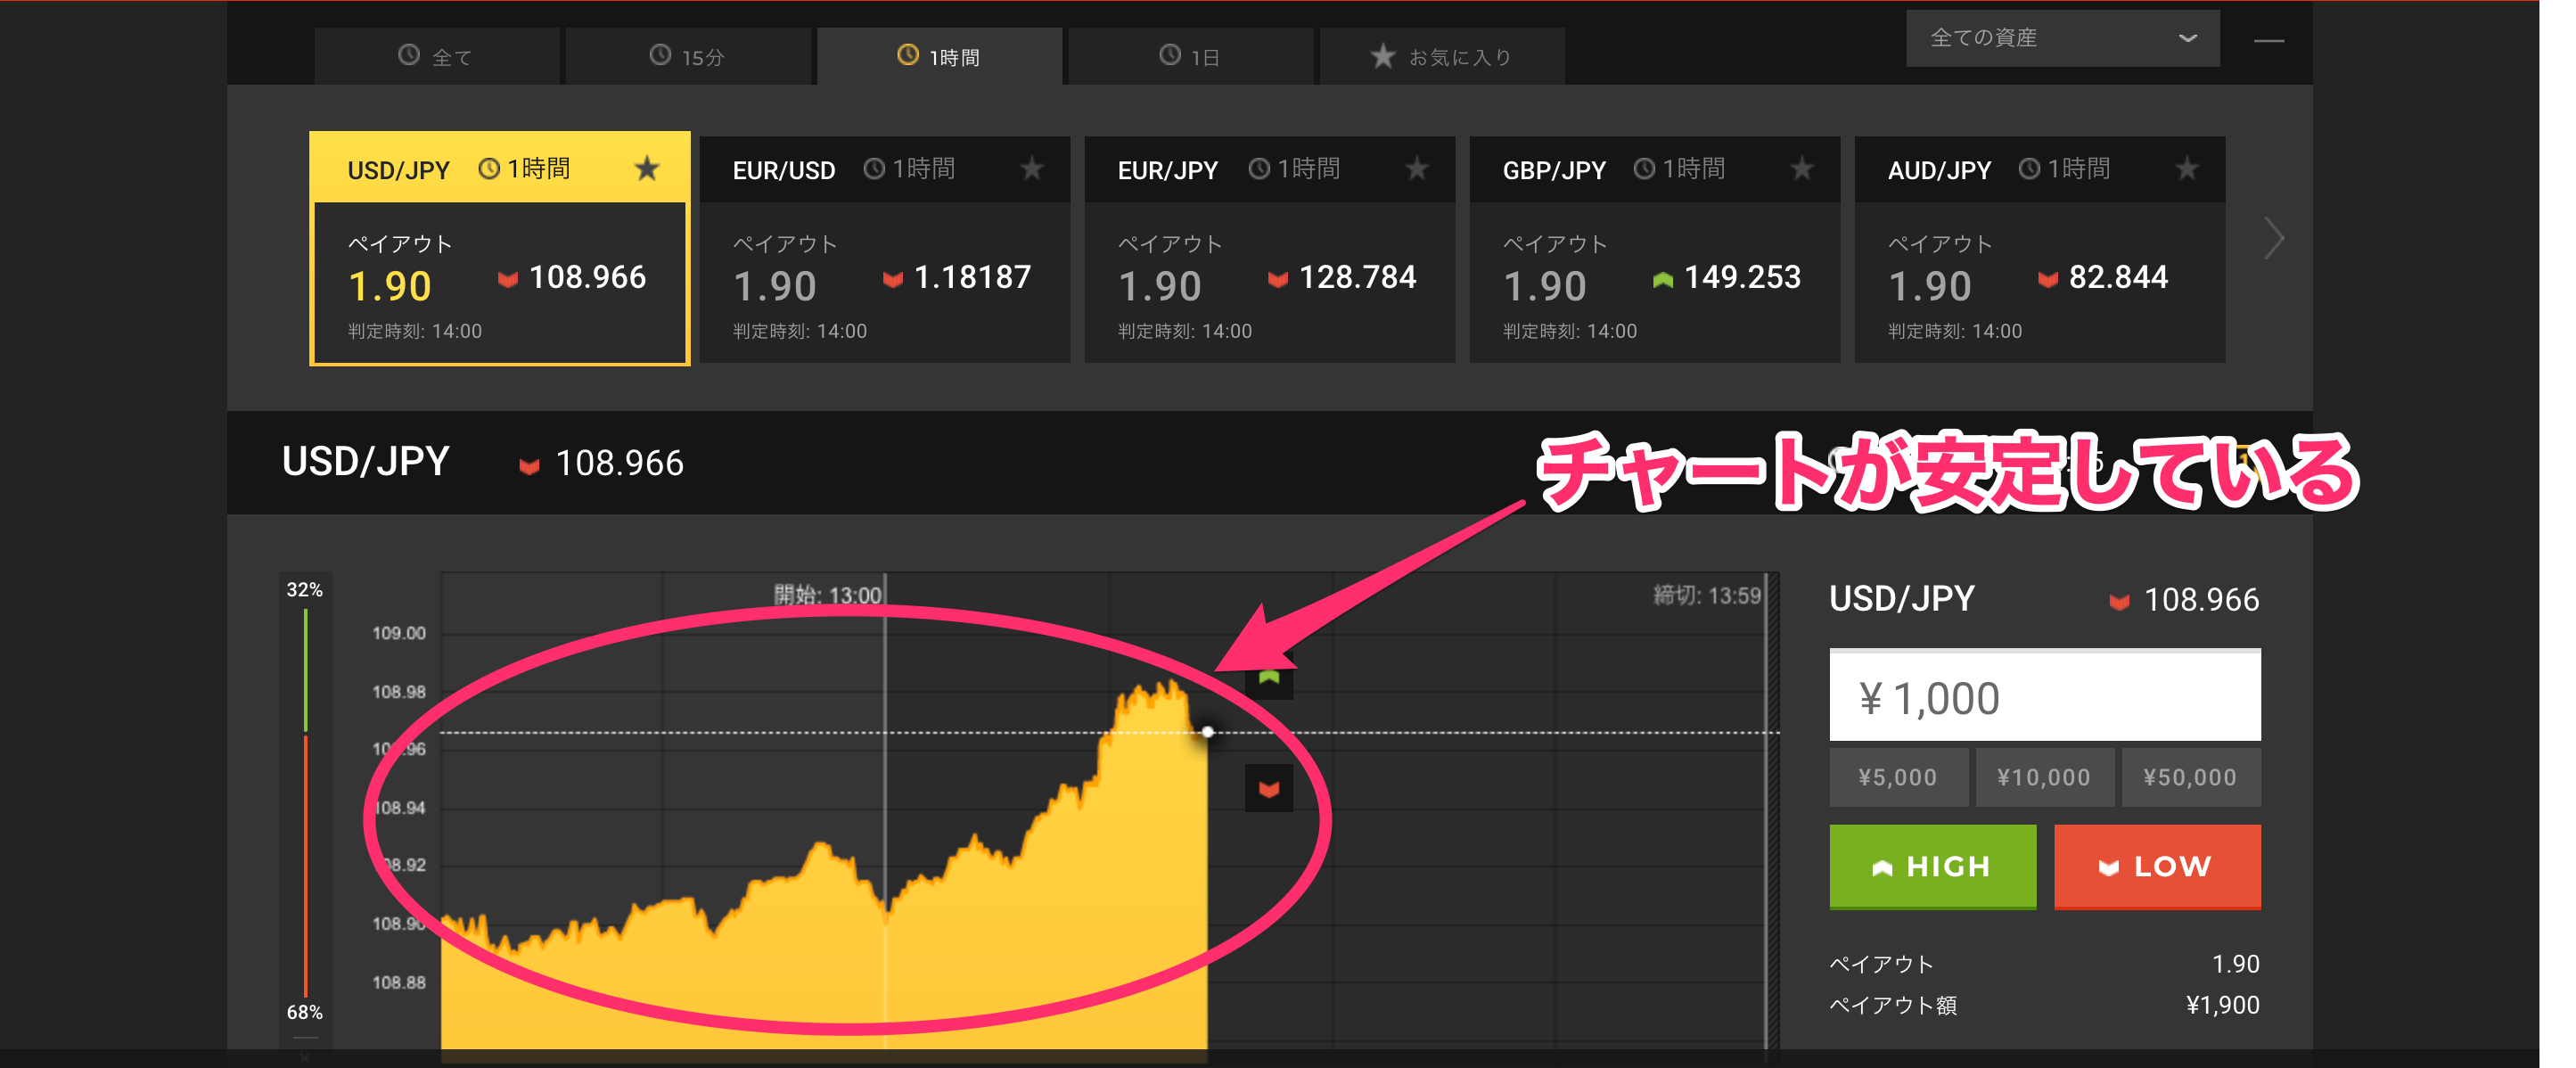 USD/JPY通貨ペアのチャート画像